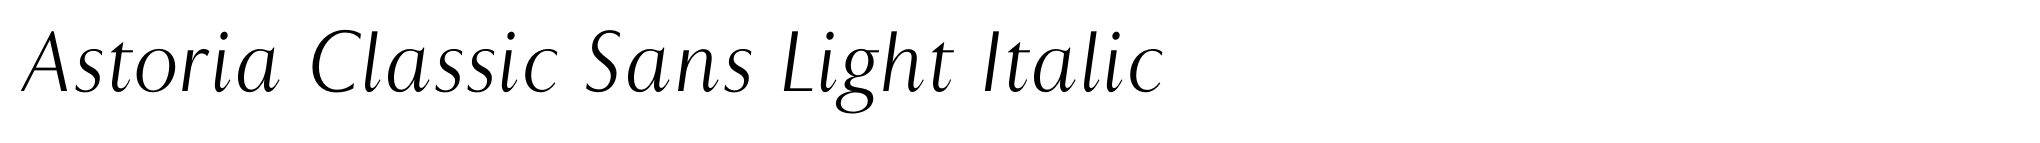 Astoria Classic Sans Light Italic image